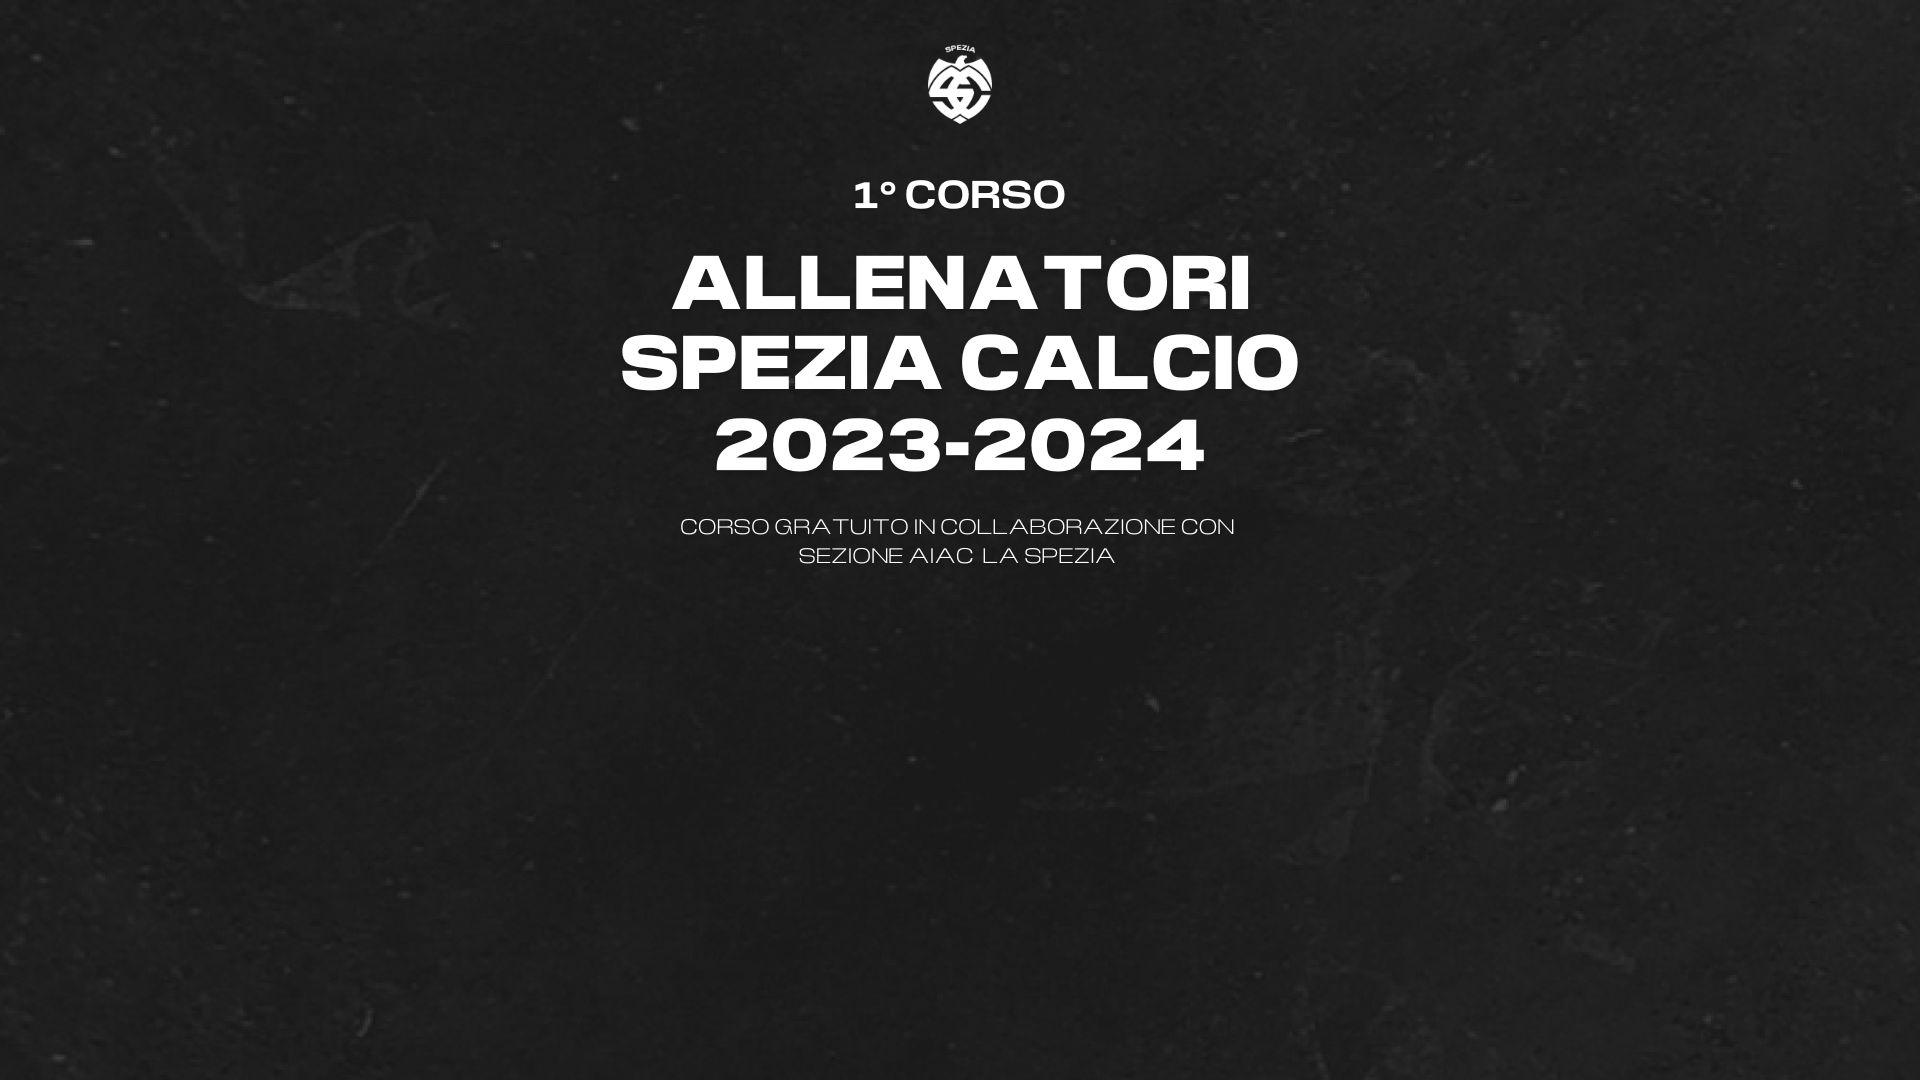 Tutto esaurito per il primo corso allenatori Spezia Calcio 2023-2024